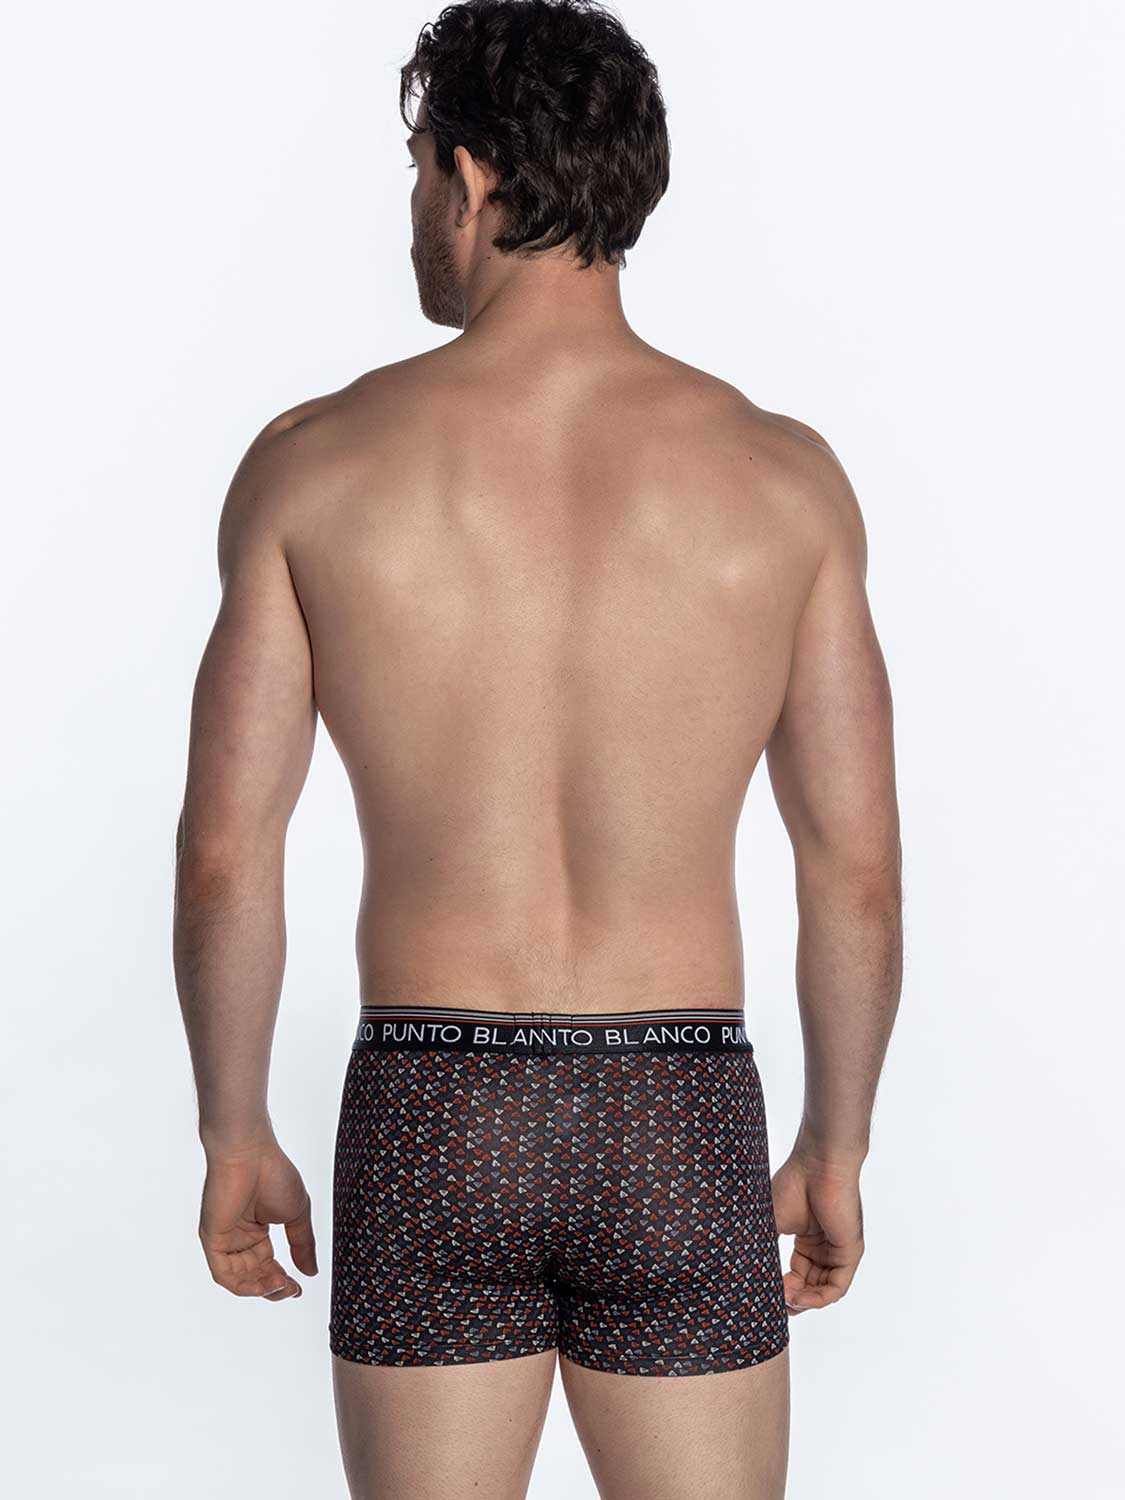 Cleocotton, Men's underwear (SLIM FIT), Brief underwear